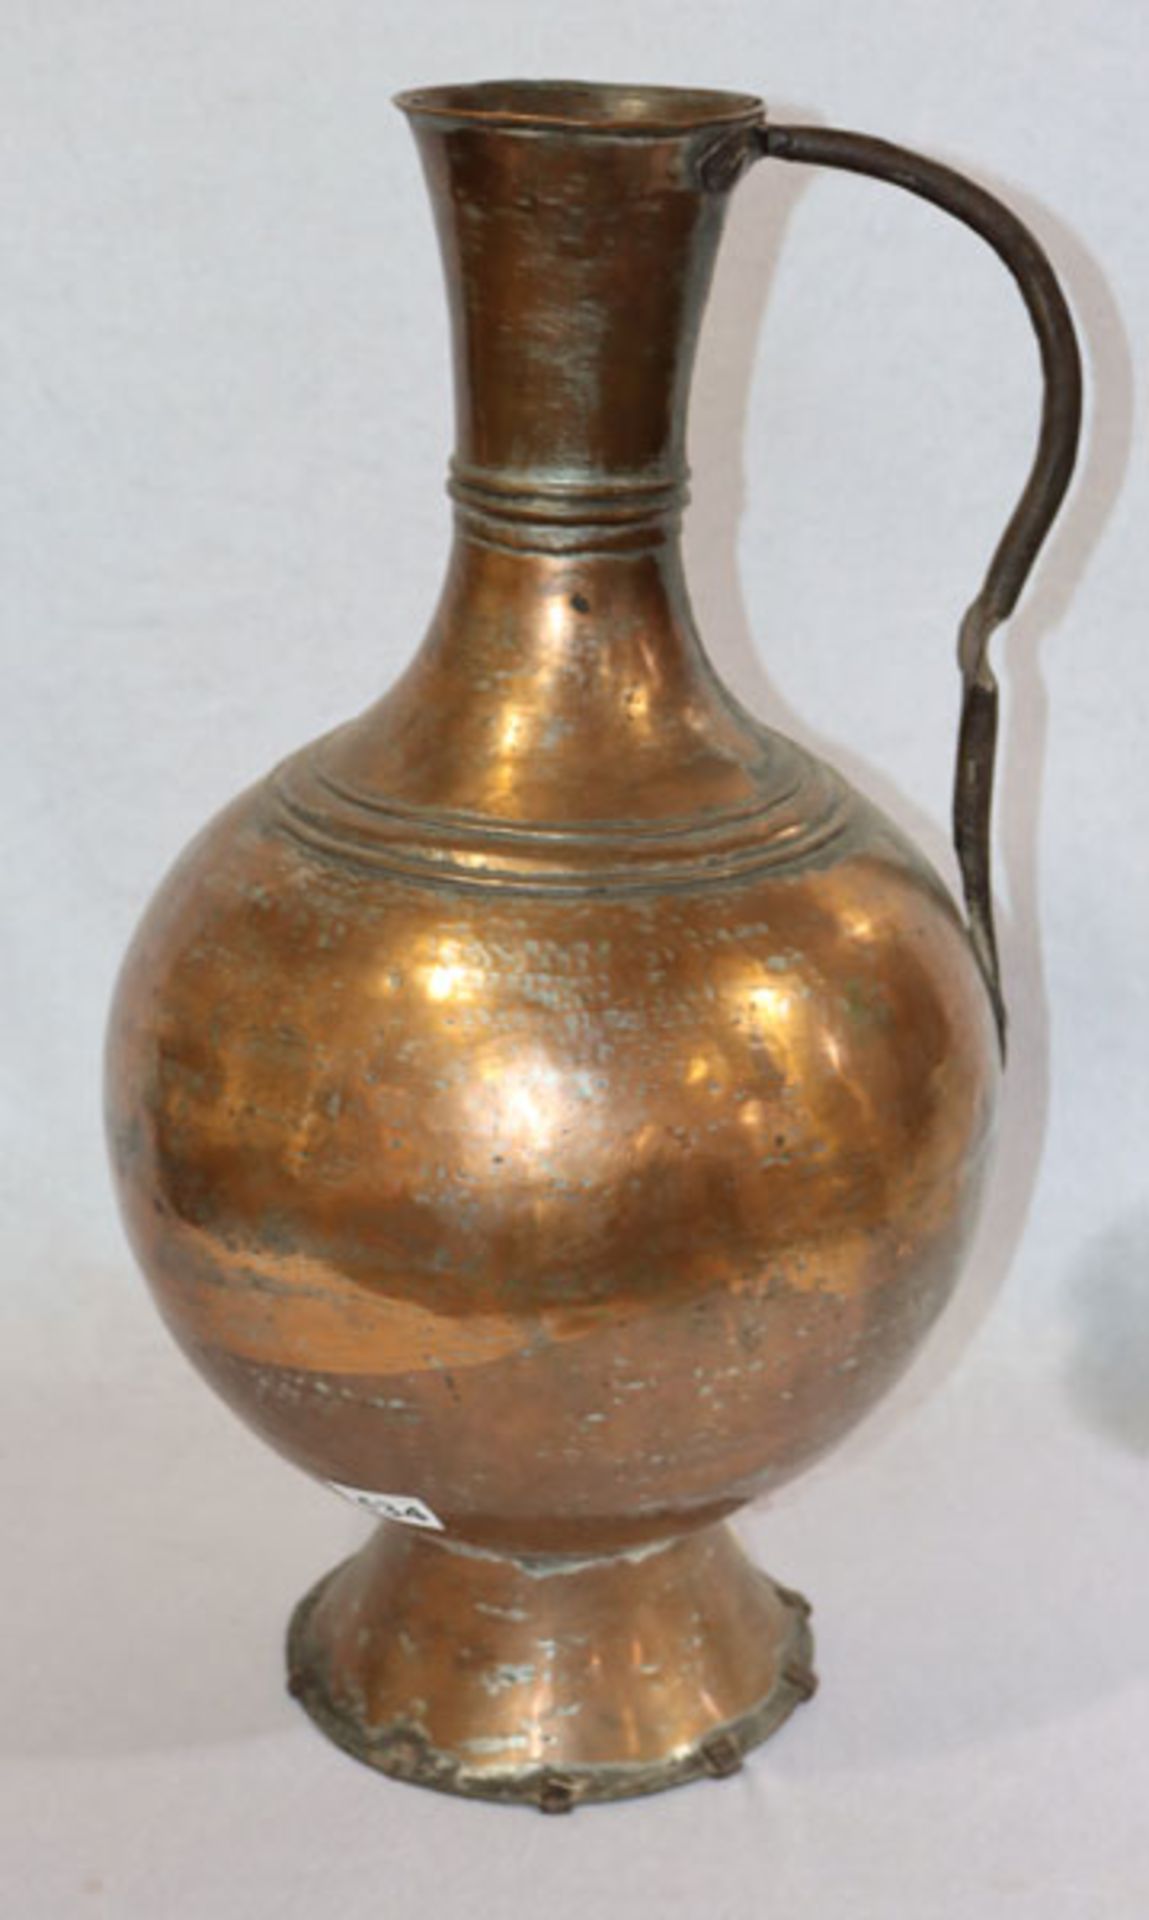 Kupfer Henkelkrug in bauchiger Form, H 59 cm, D ca. 36 cm, teils verbeult, Alters- und